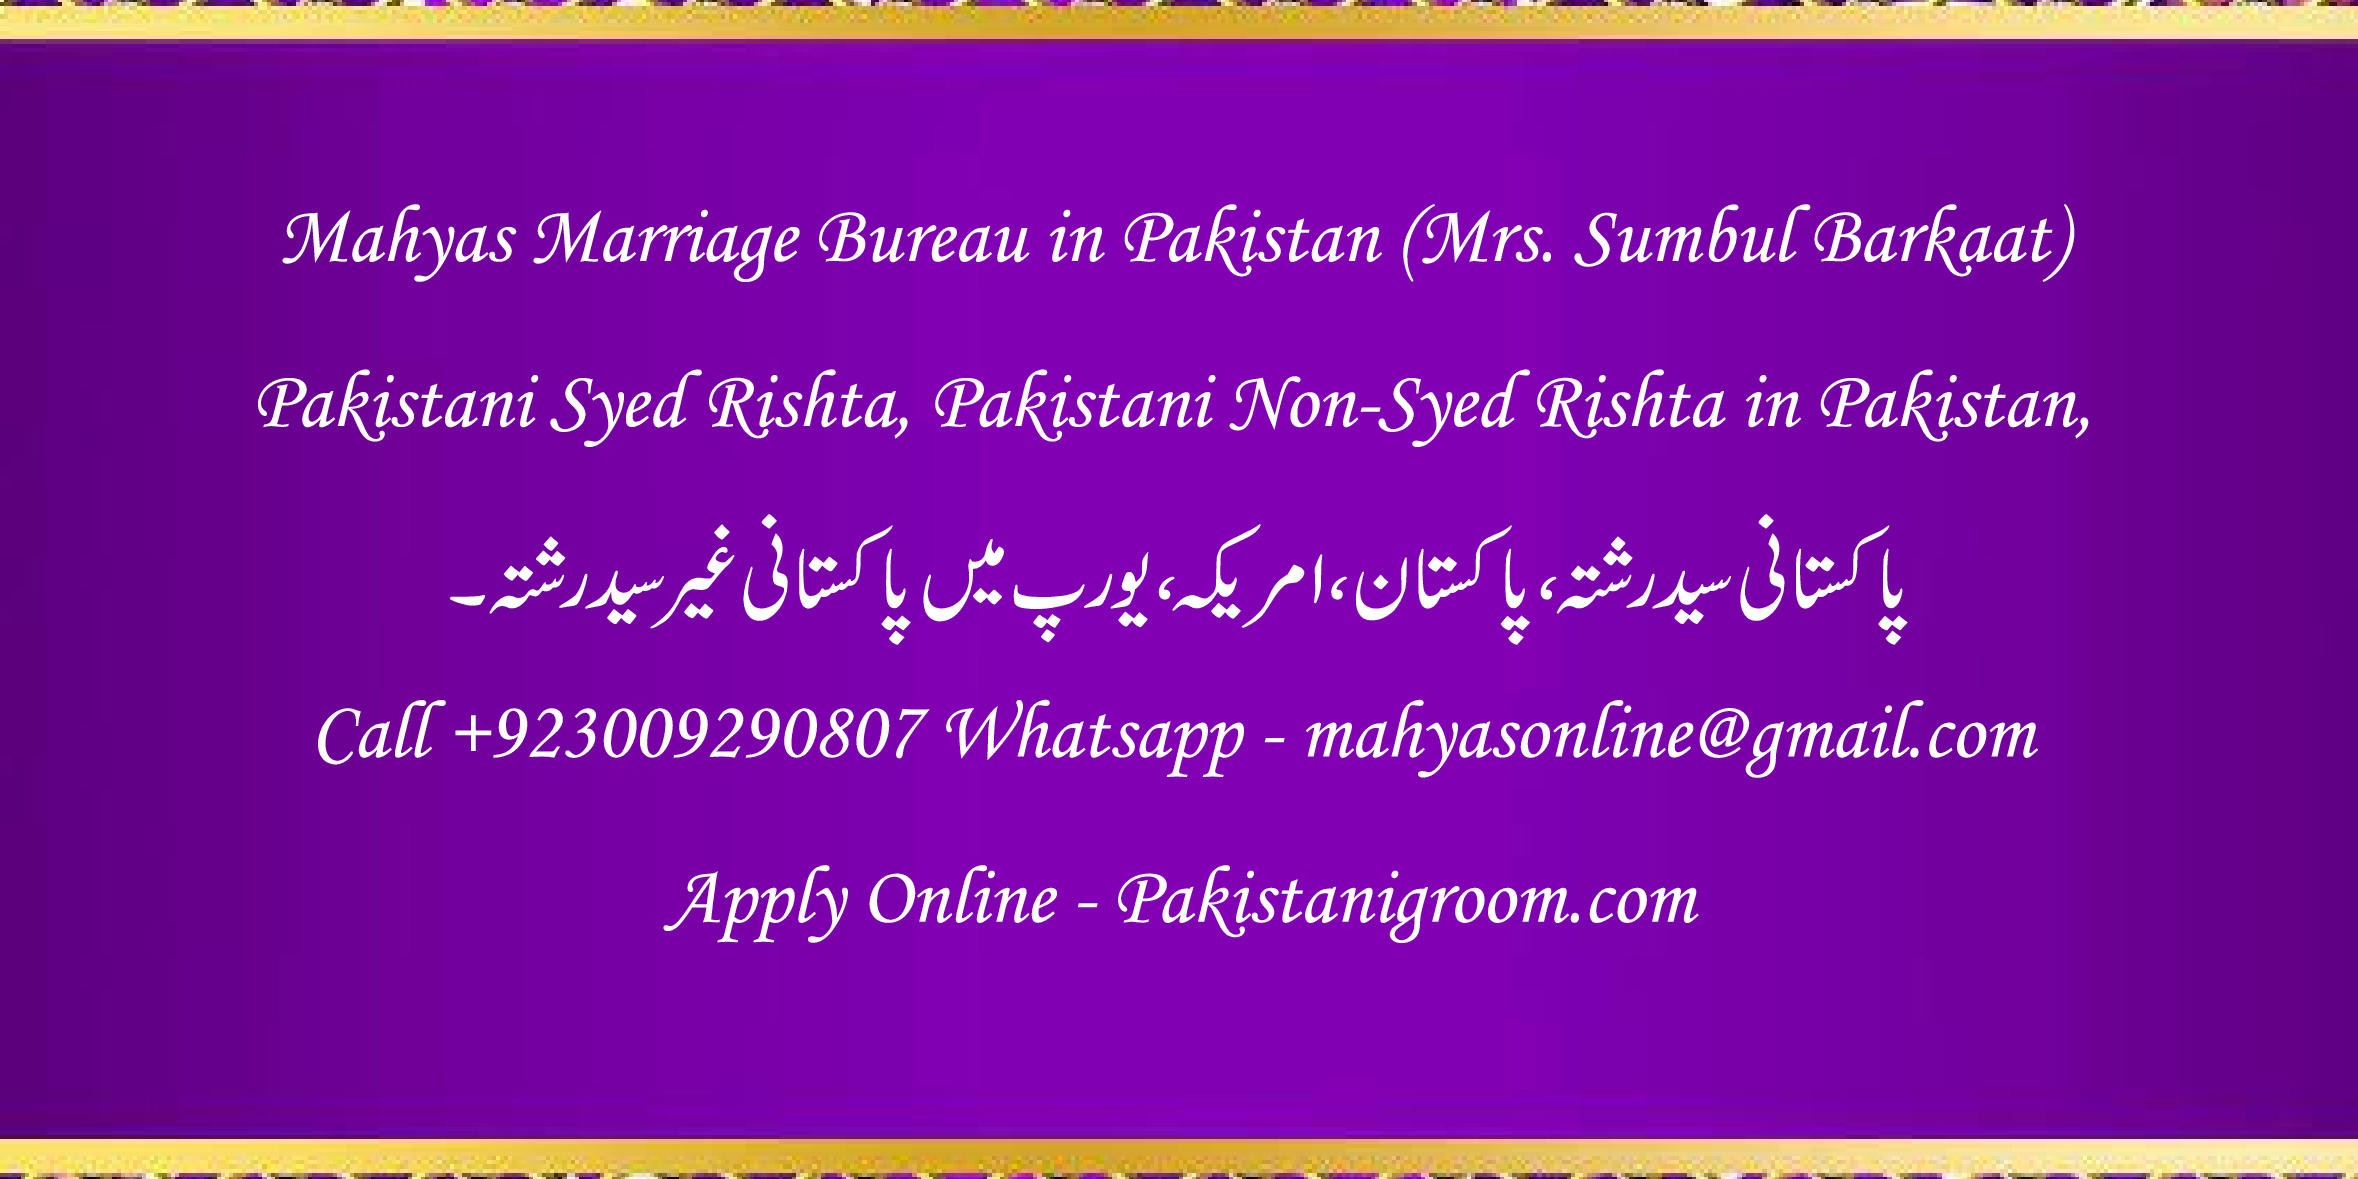 Mahyas-marriage-bureau-Karachi-Pakistan-for-Shia-Sunni-Remarriage-Divorce-Widow-Second-marriage-Punjabi-Pashto-Urdu-7.png